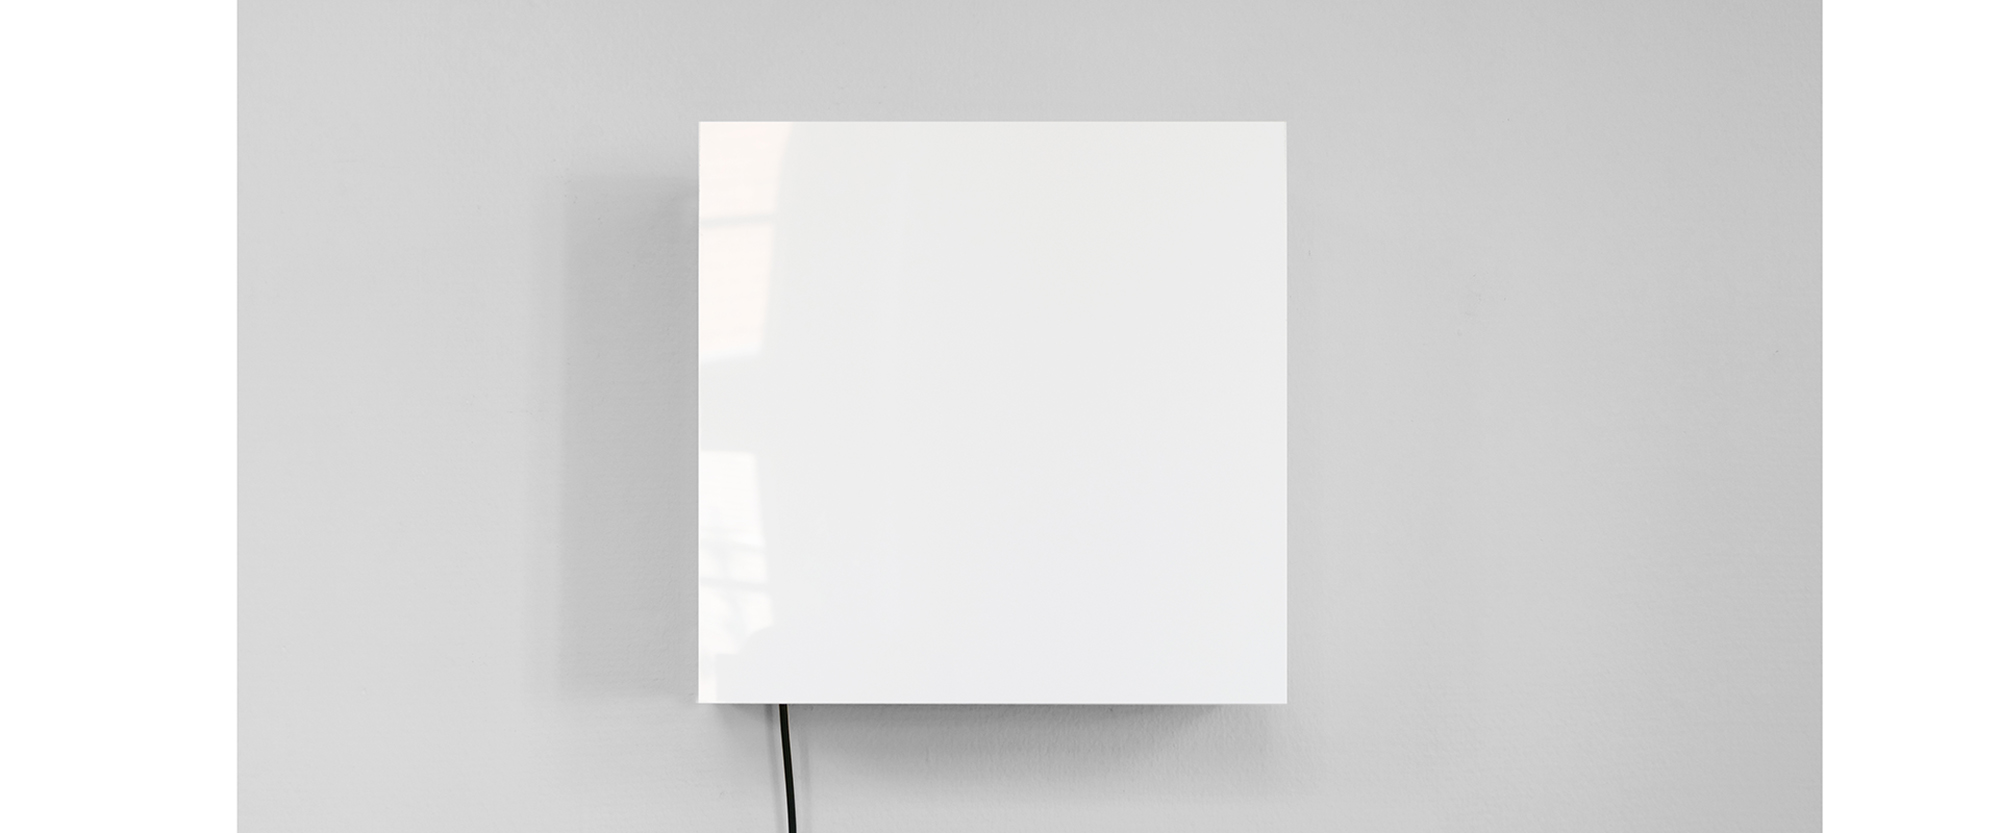 Weißes Quadrat – 2019, Kinetisches Klangobjekt, weißes Acrylglas, Arduino, Holz, Eisen, Elektromagnete, Zugfedern, Edition von 3 + 2 a.p.